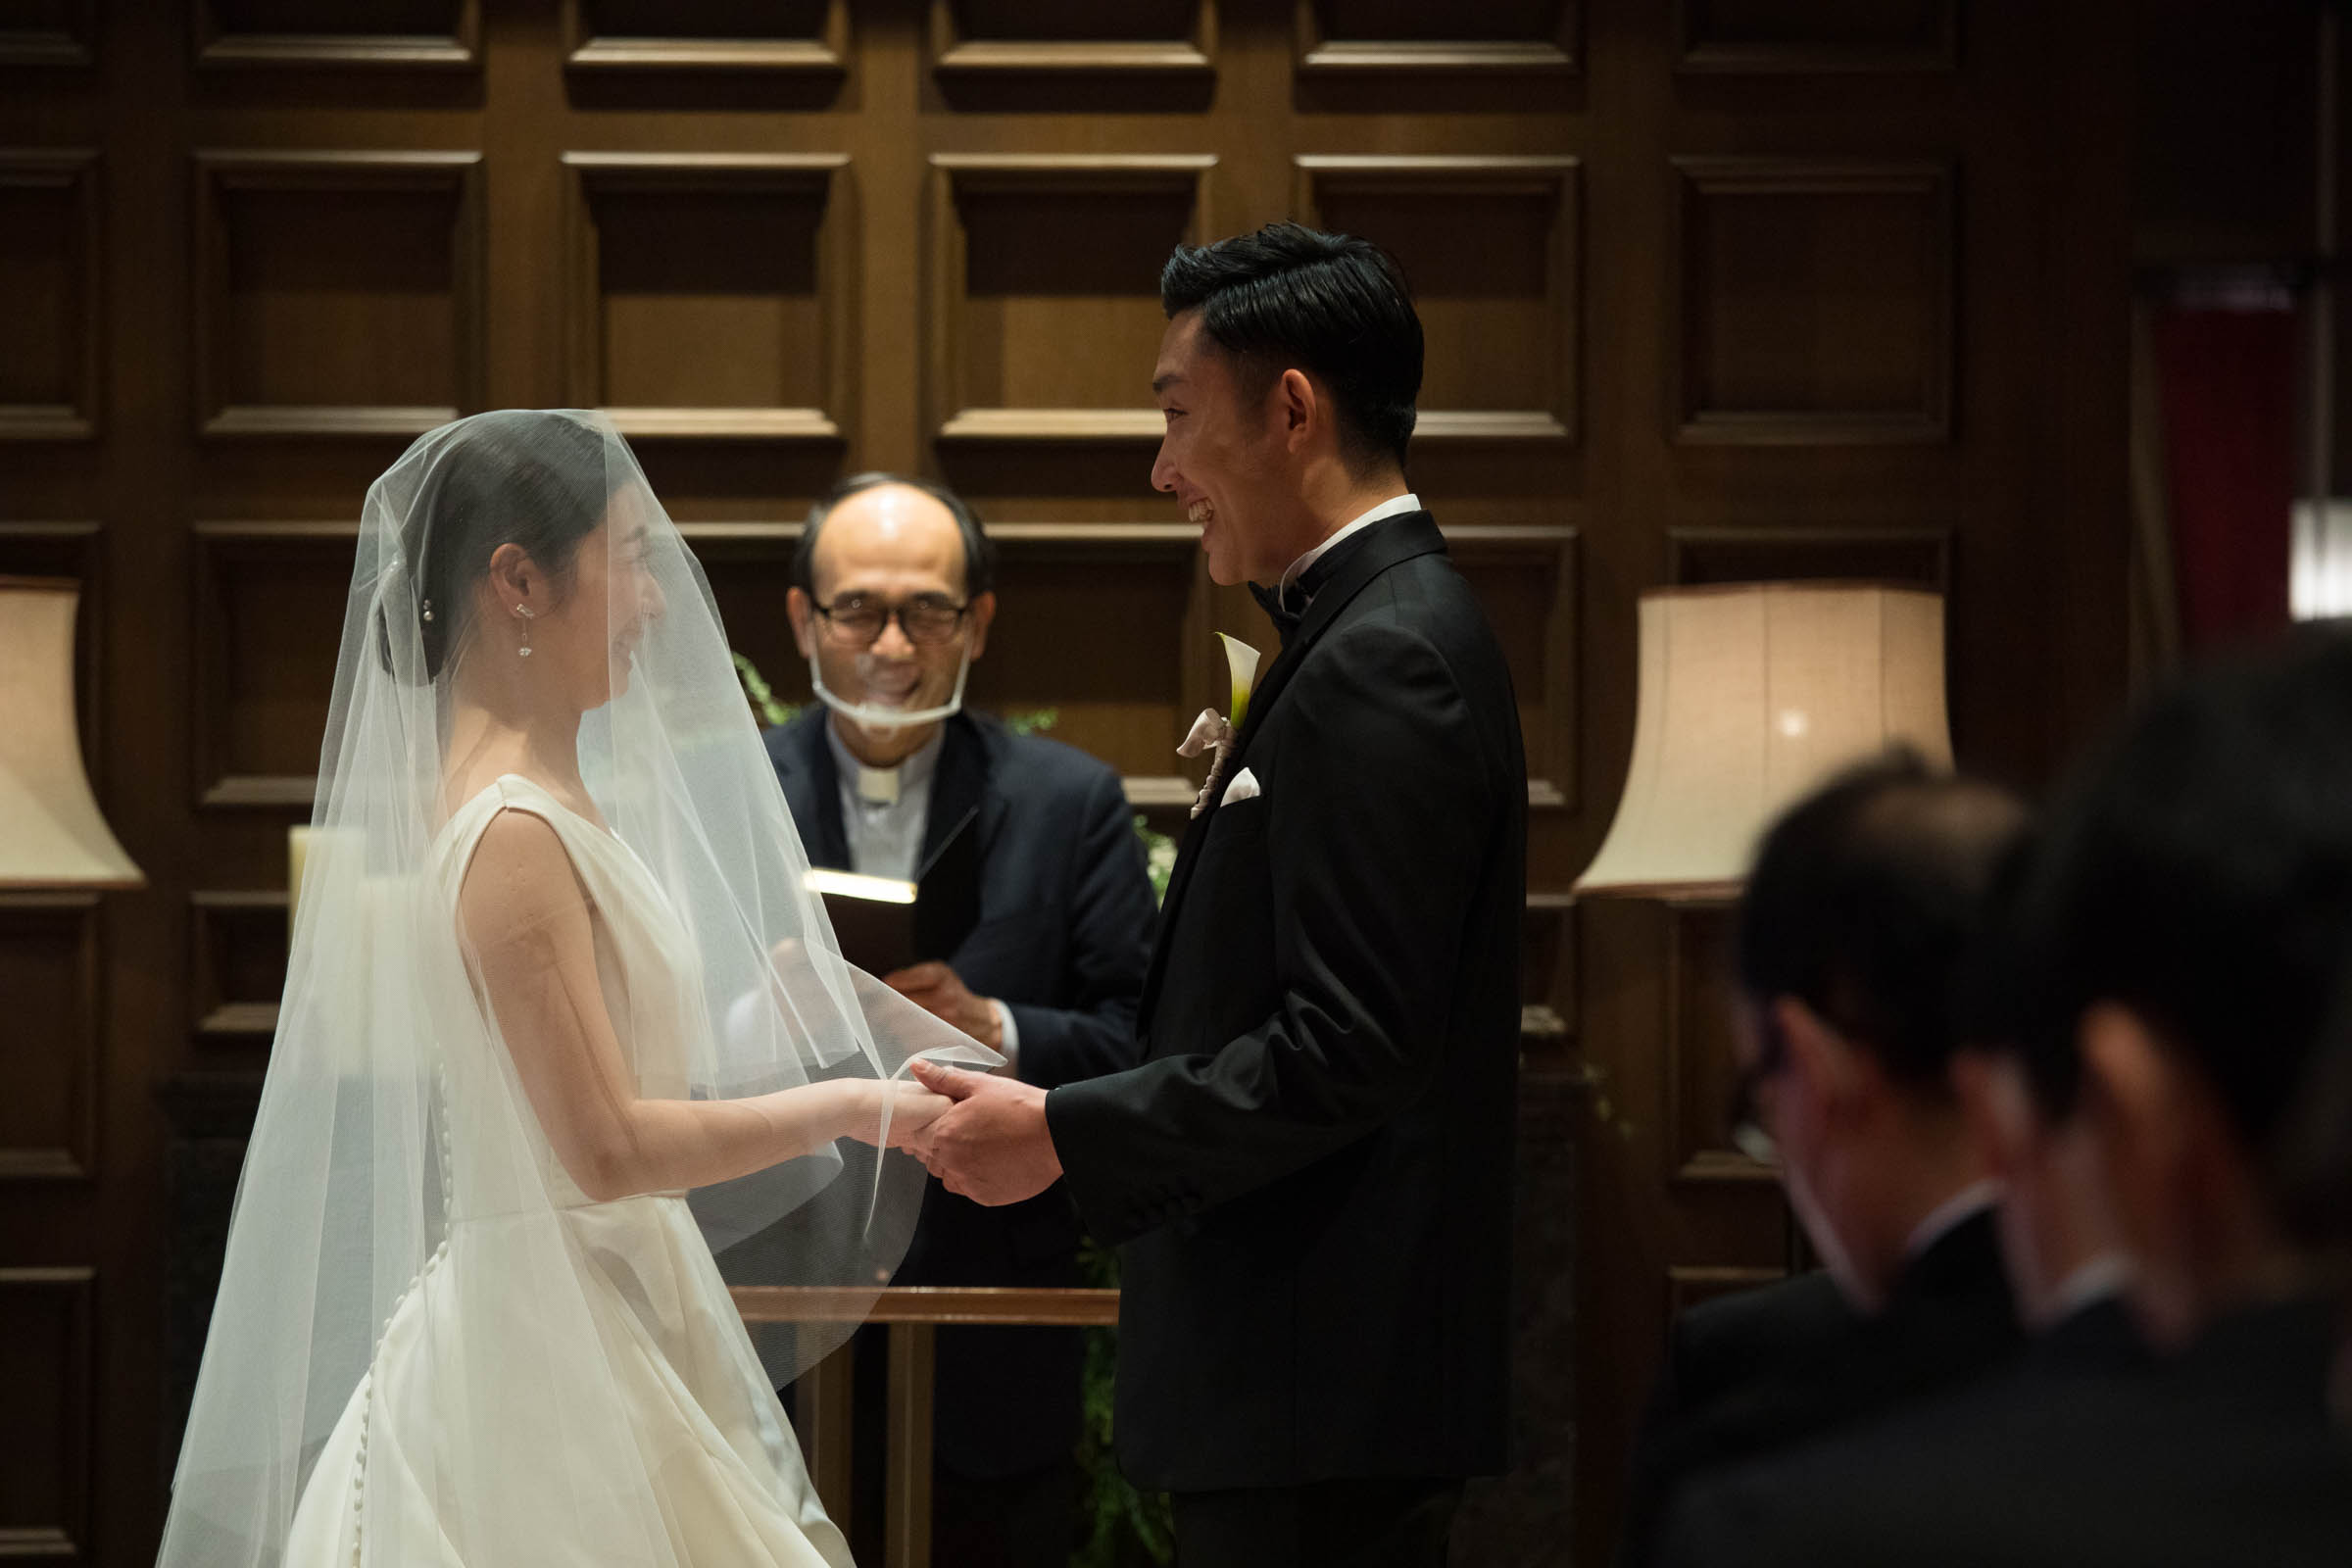 赤坂プリンスクラシックハウスのチャペルにてキリスト式のクラシカルな結婚式を挙げるご新郎ご新婦様の様子